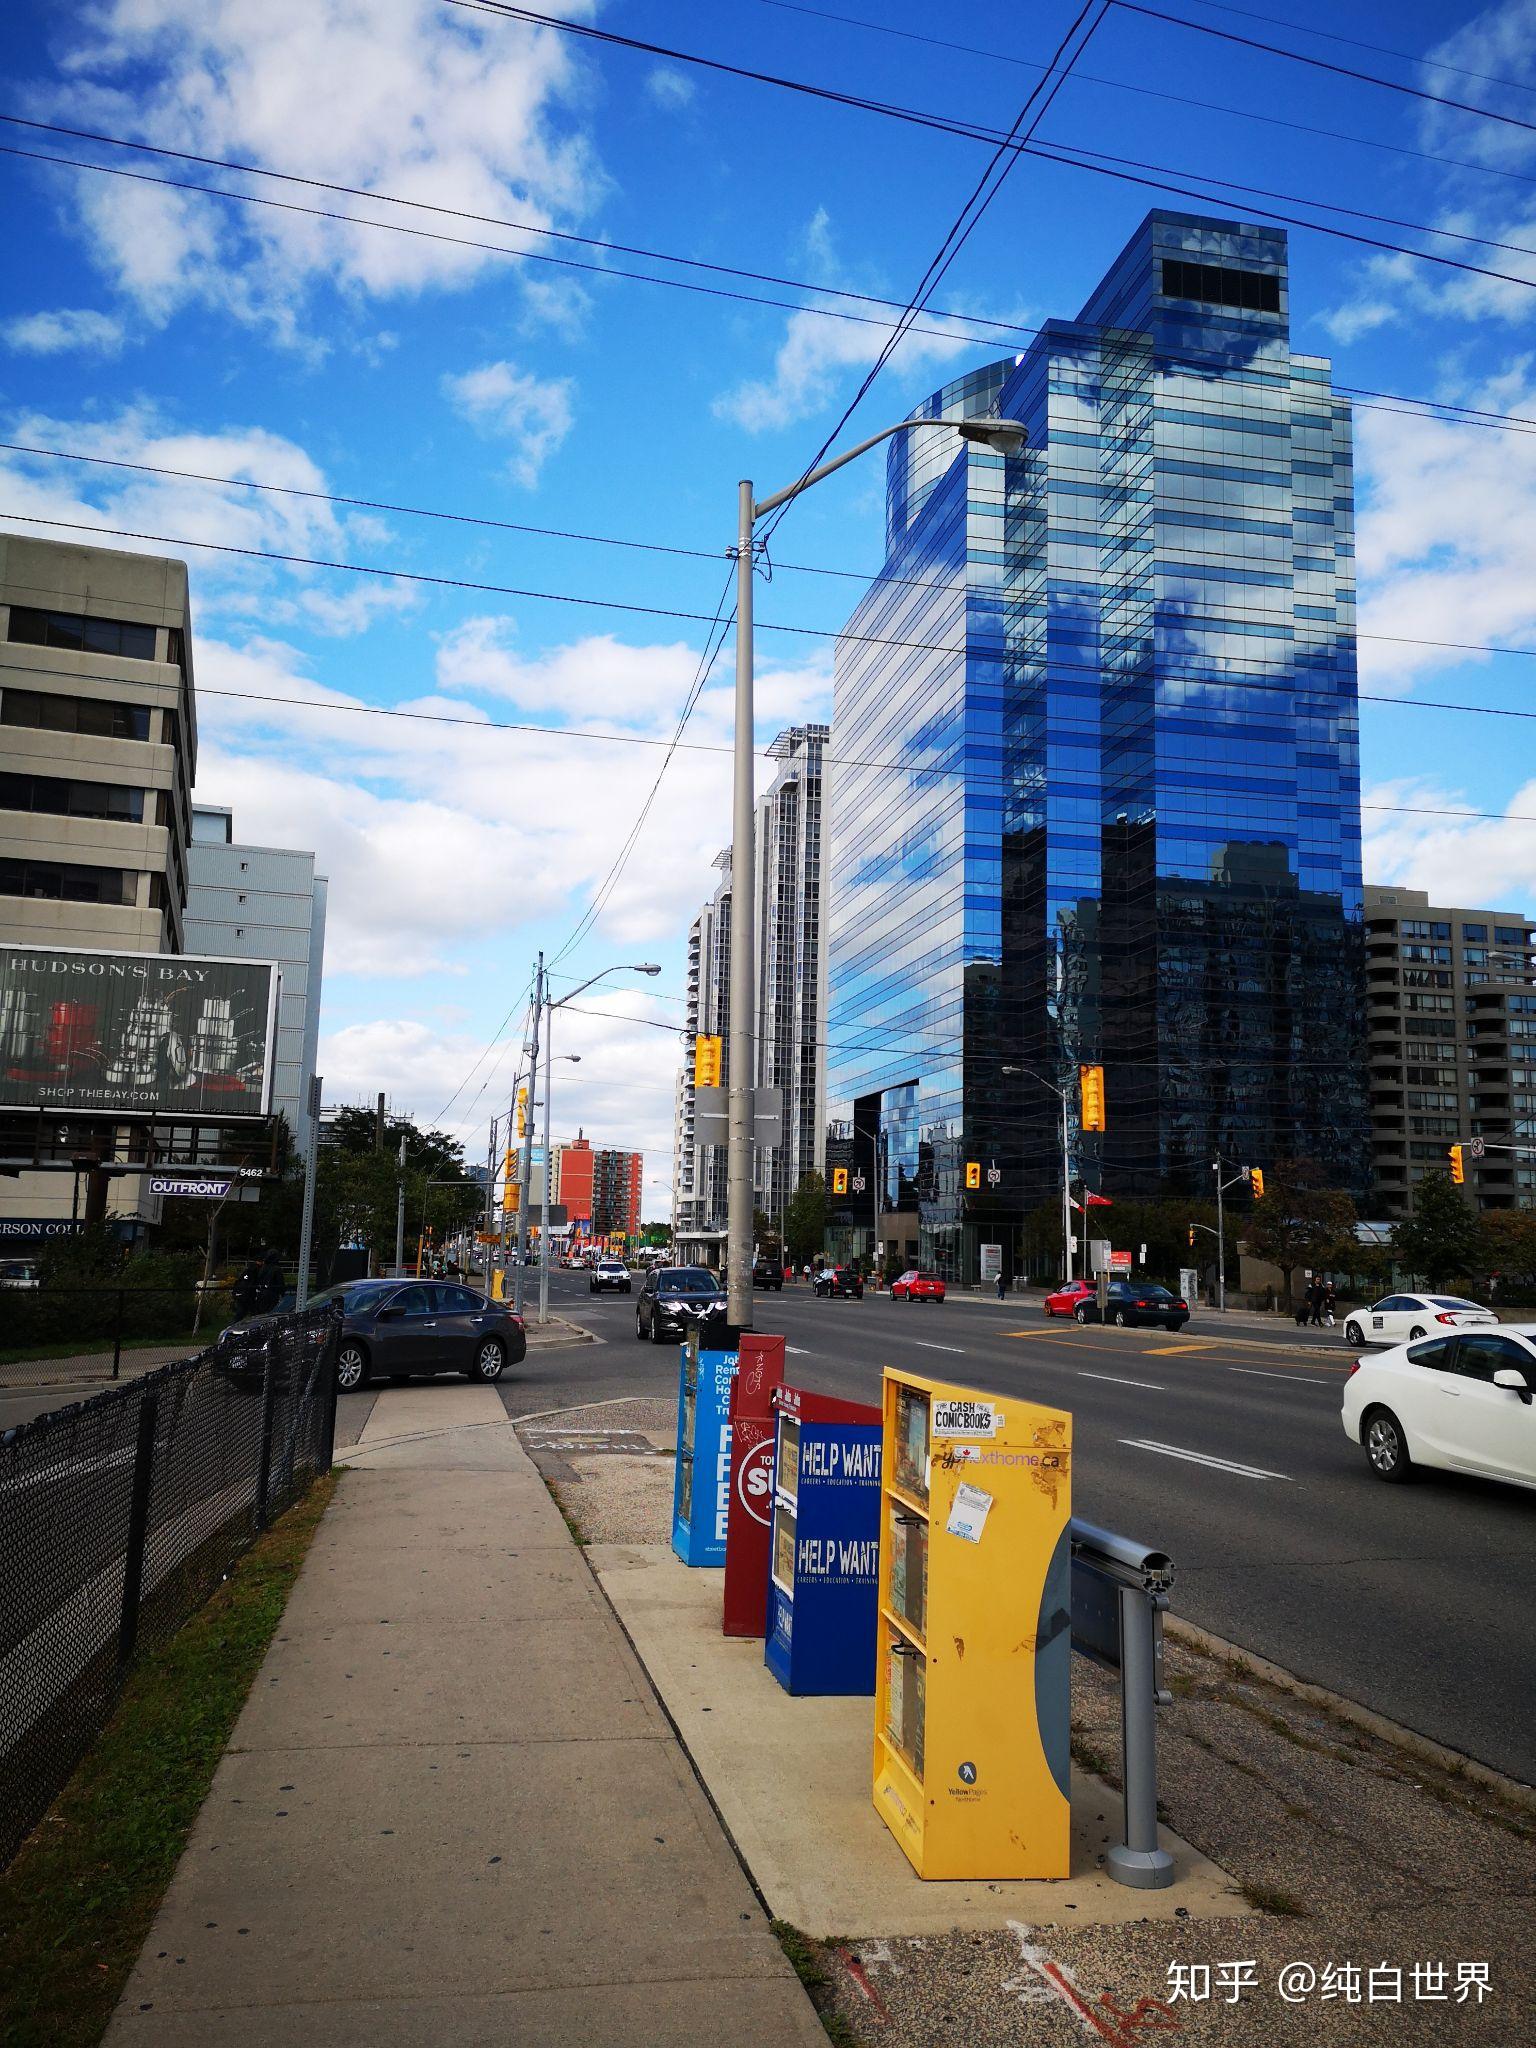 加拿大的小城市舒服还是多伦多温哥华这样的大城市舒服